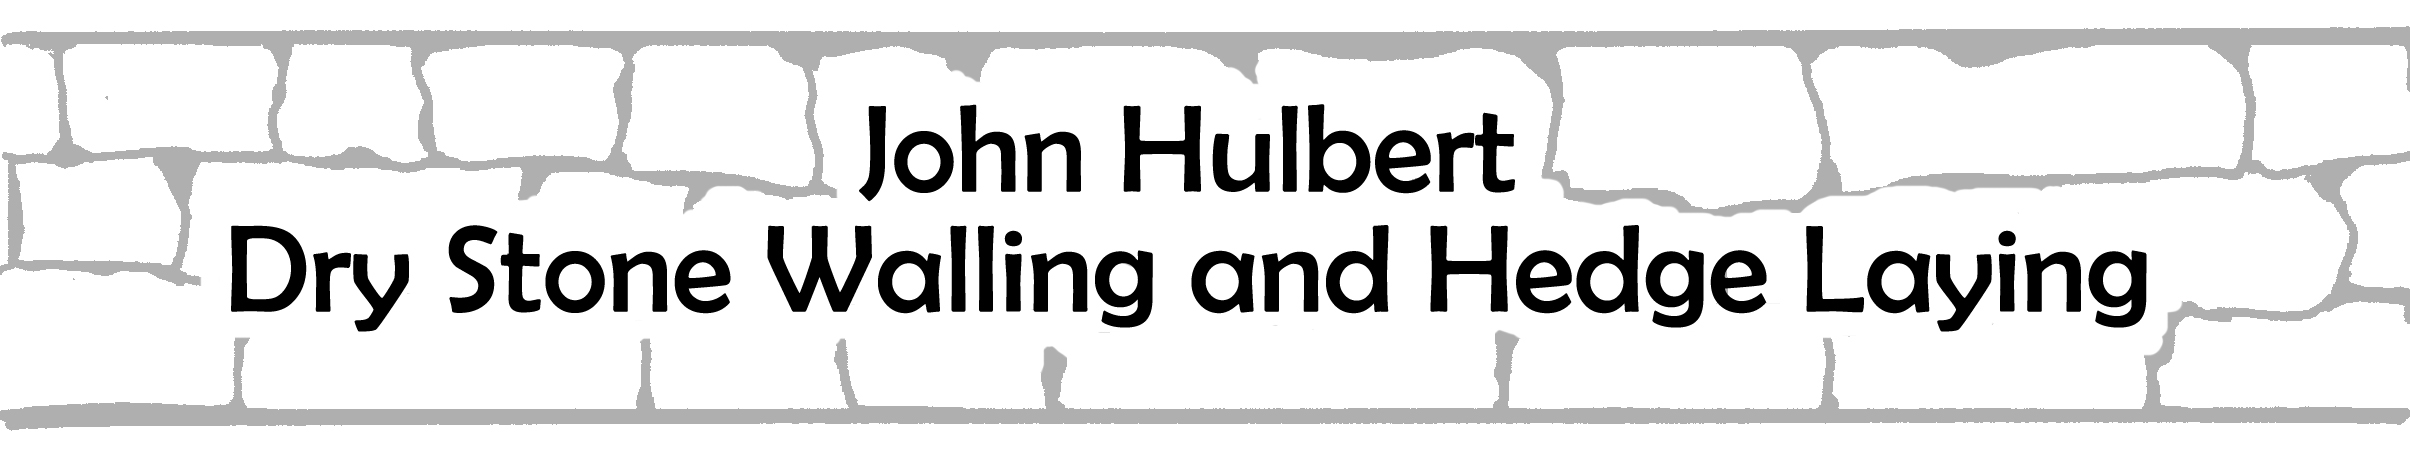 John Hulbert Dry Stone Walling and Hedge Laying